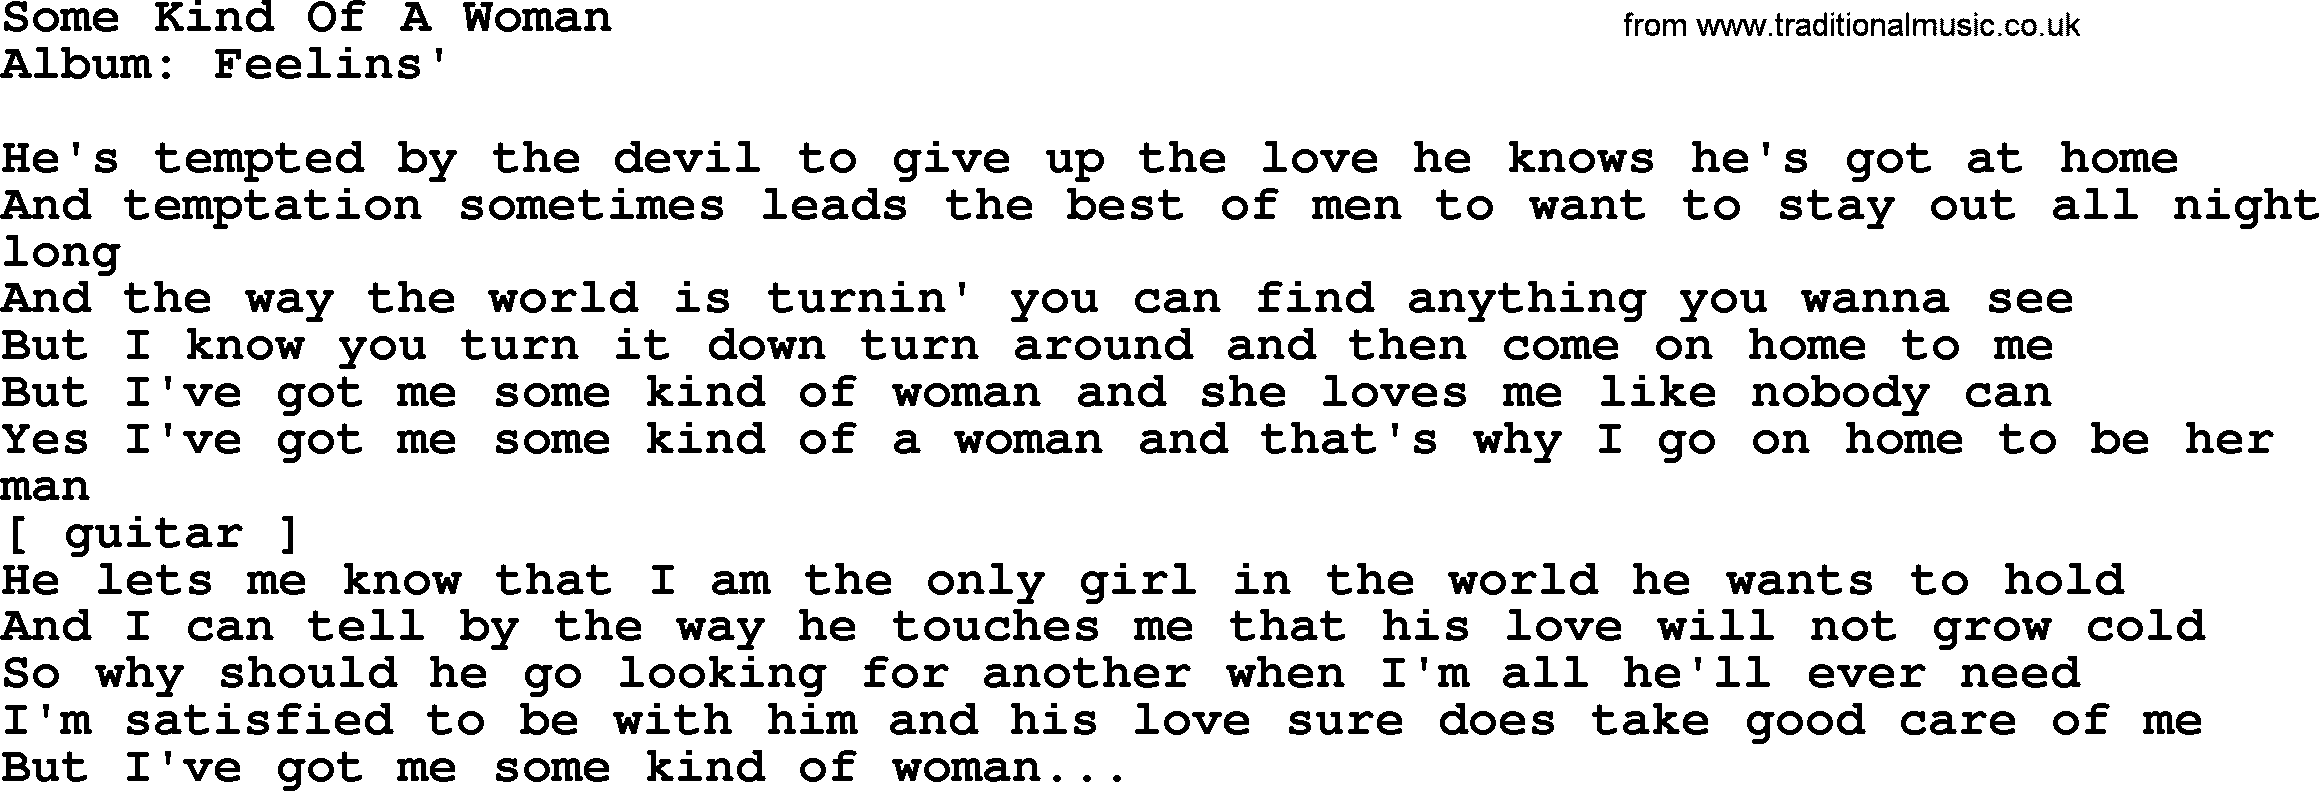 Loretta Lynn song: Some Kind Of A Woman lyrics